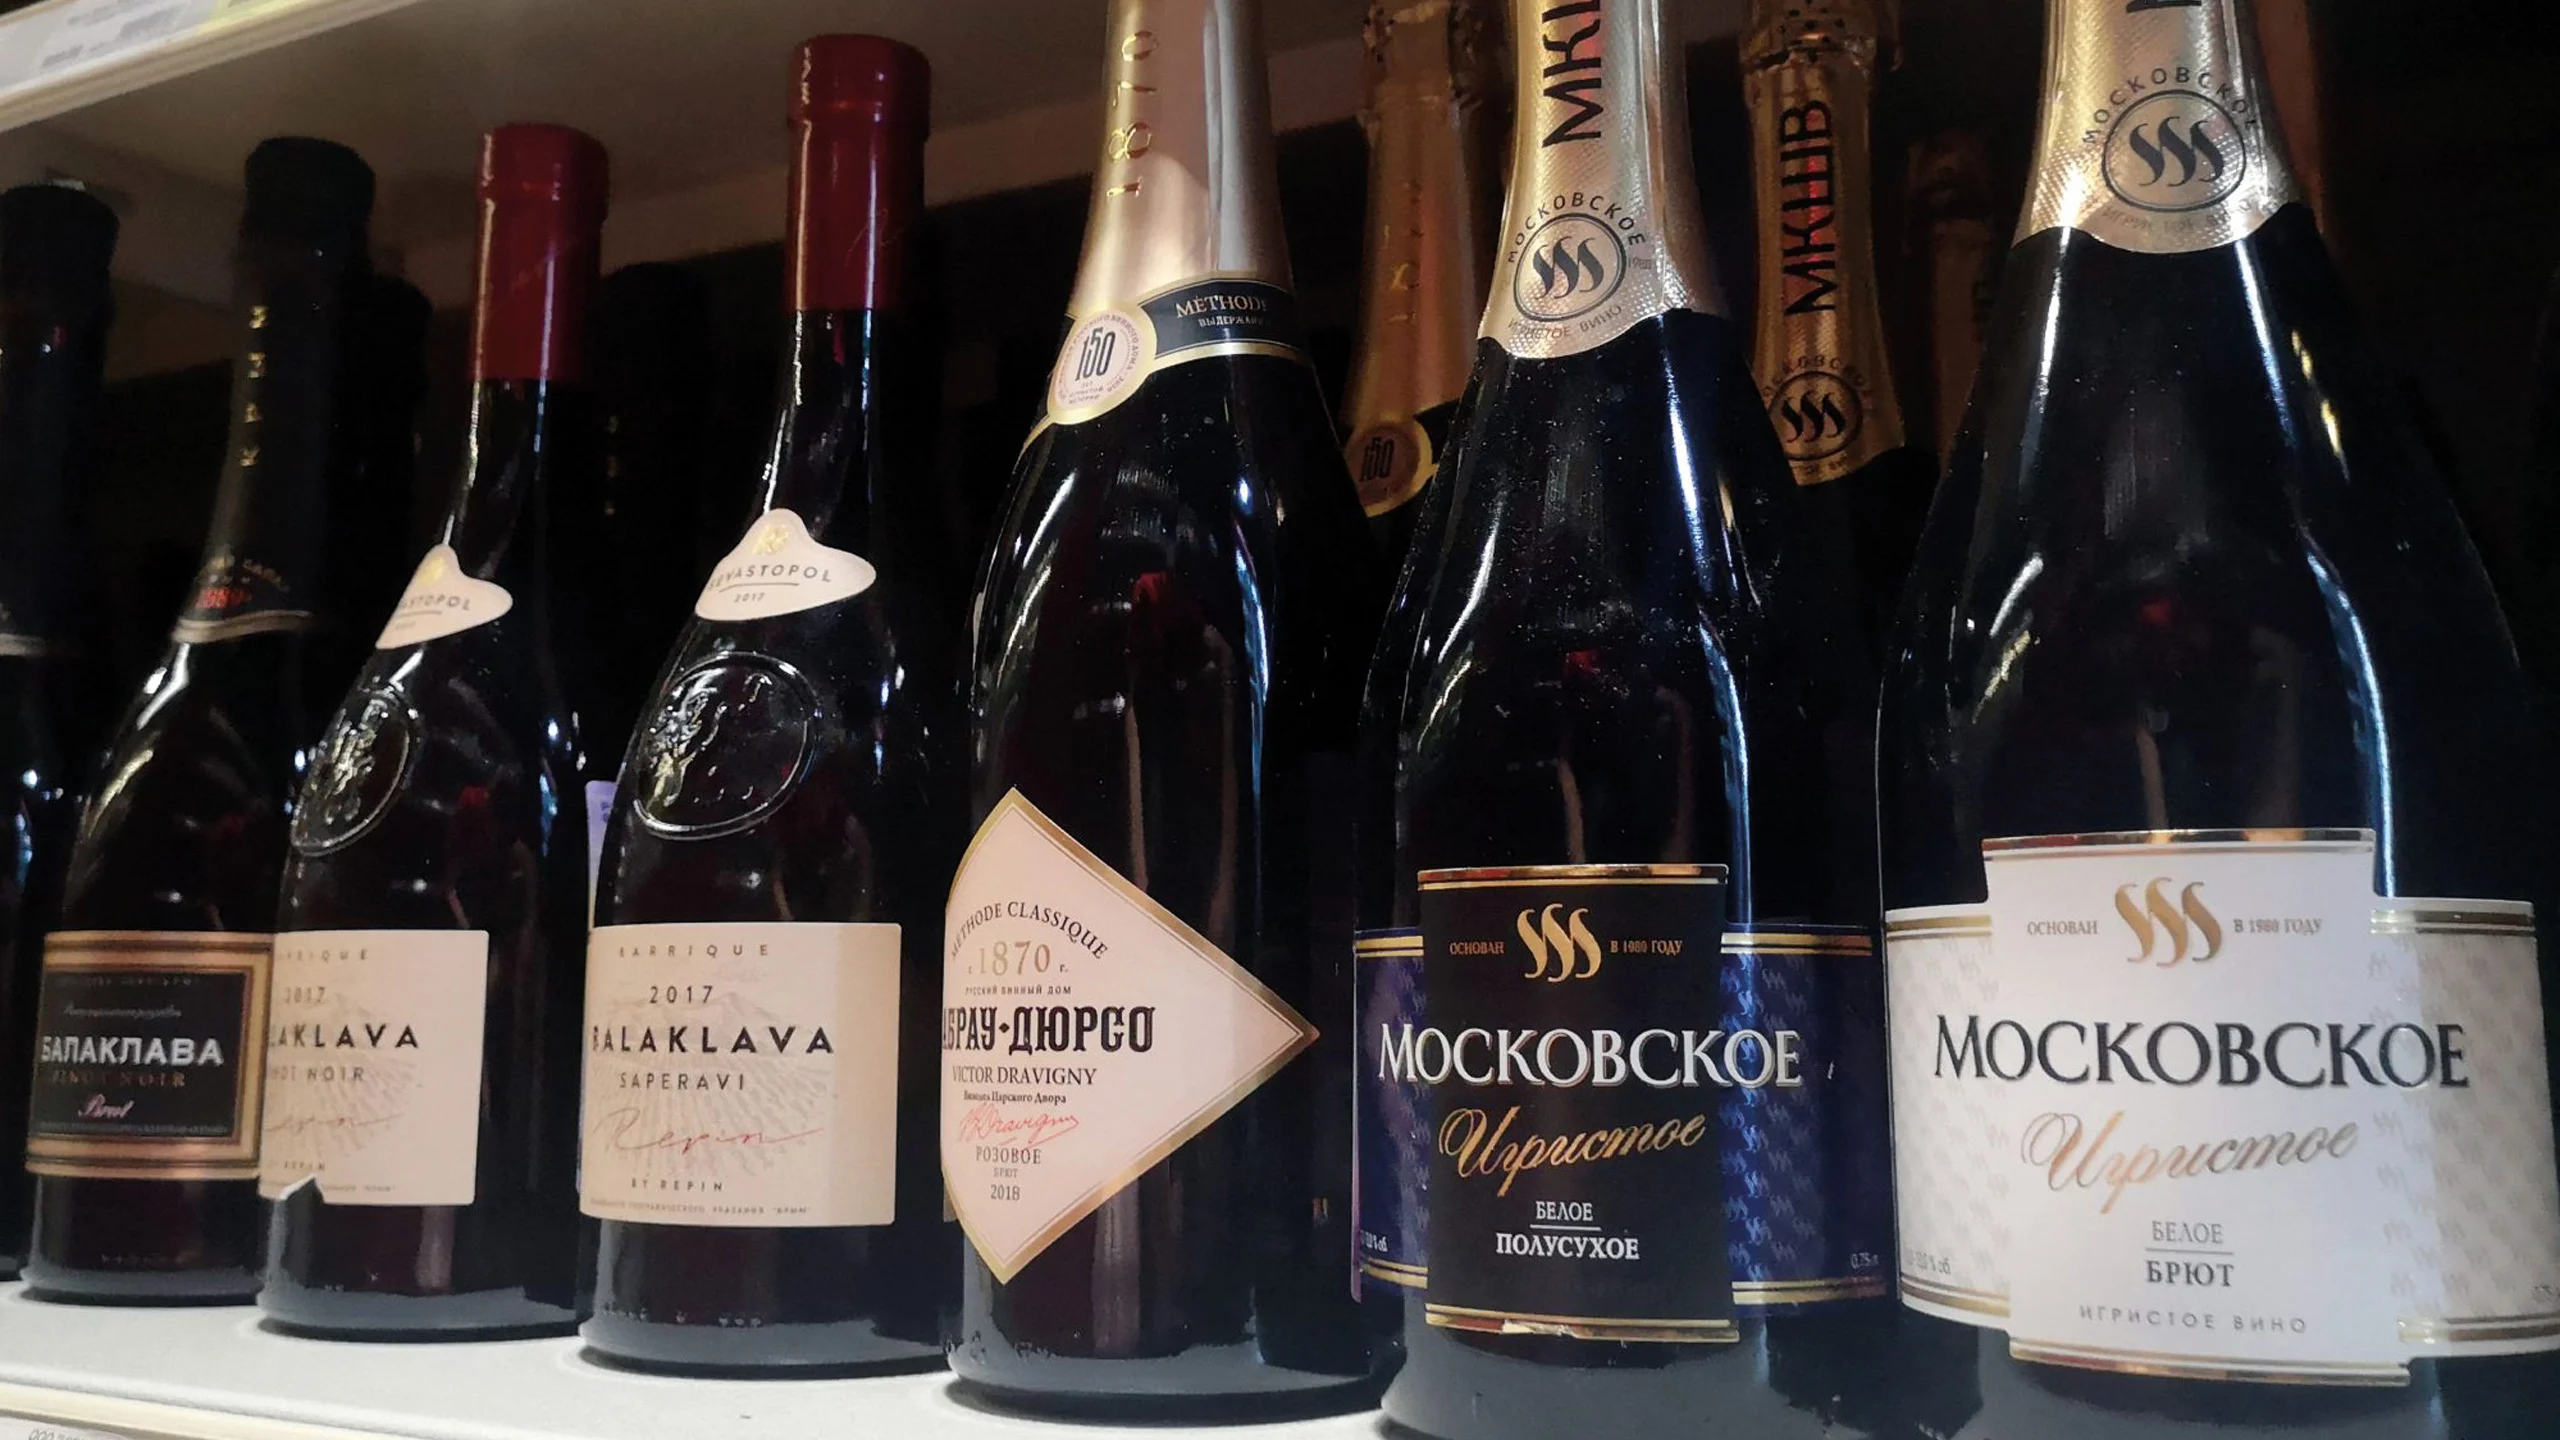 Solo los vinos fabricados en Rusia pueden llamarse champagne, según la nueva ley de Putin